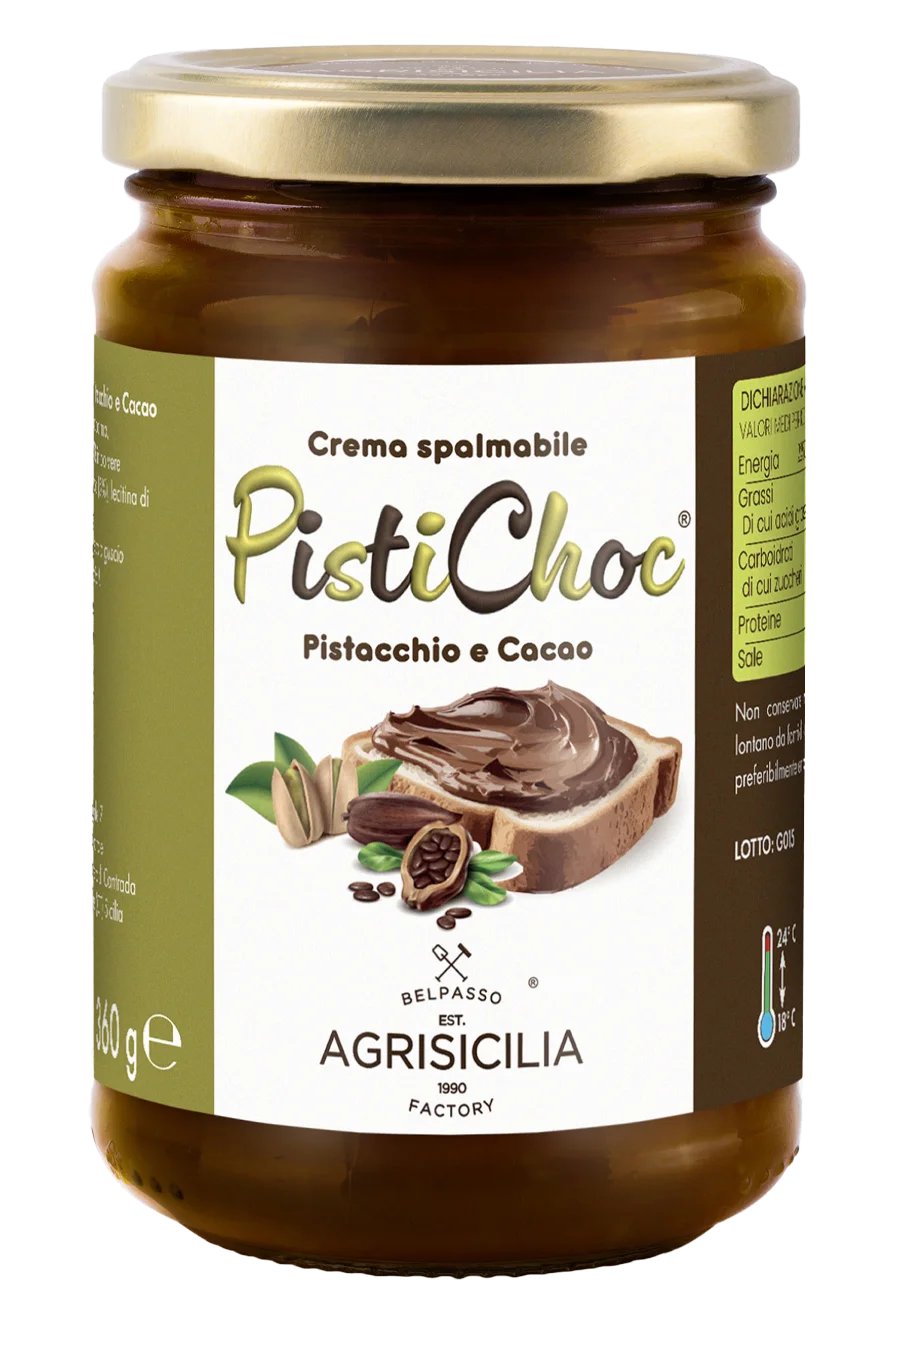 Crema spalmabile PistiChoc® al Pistacchio e Cacao - 360g